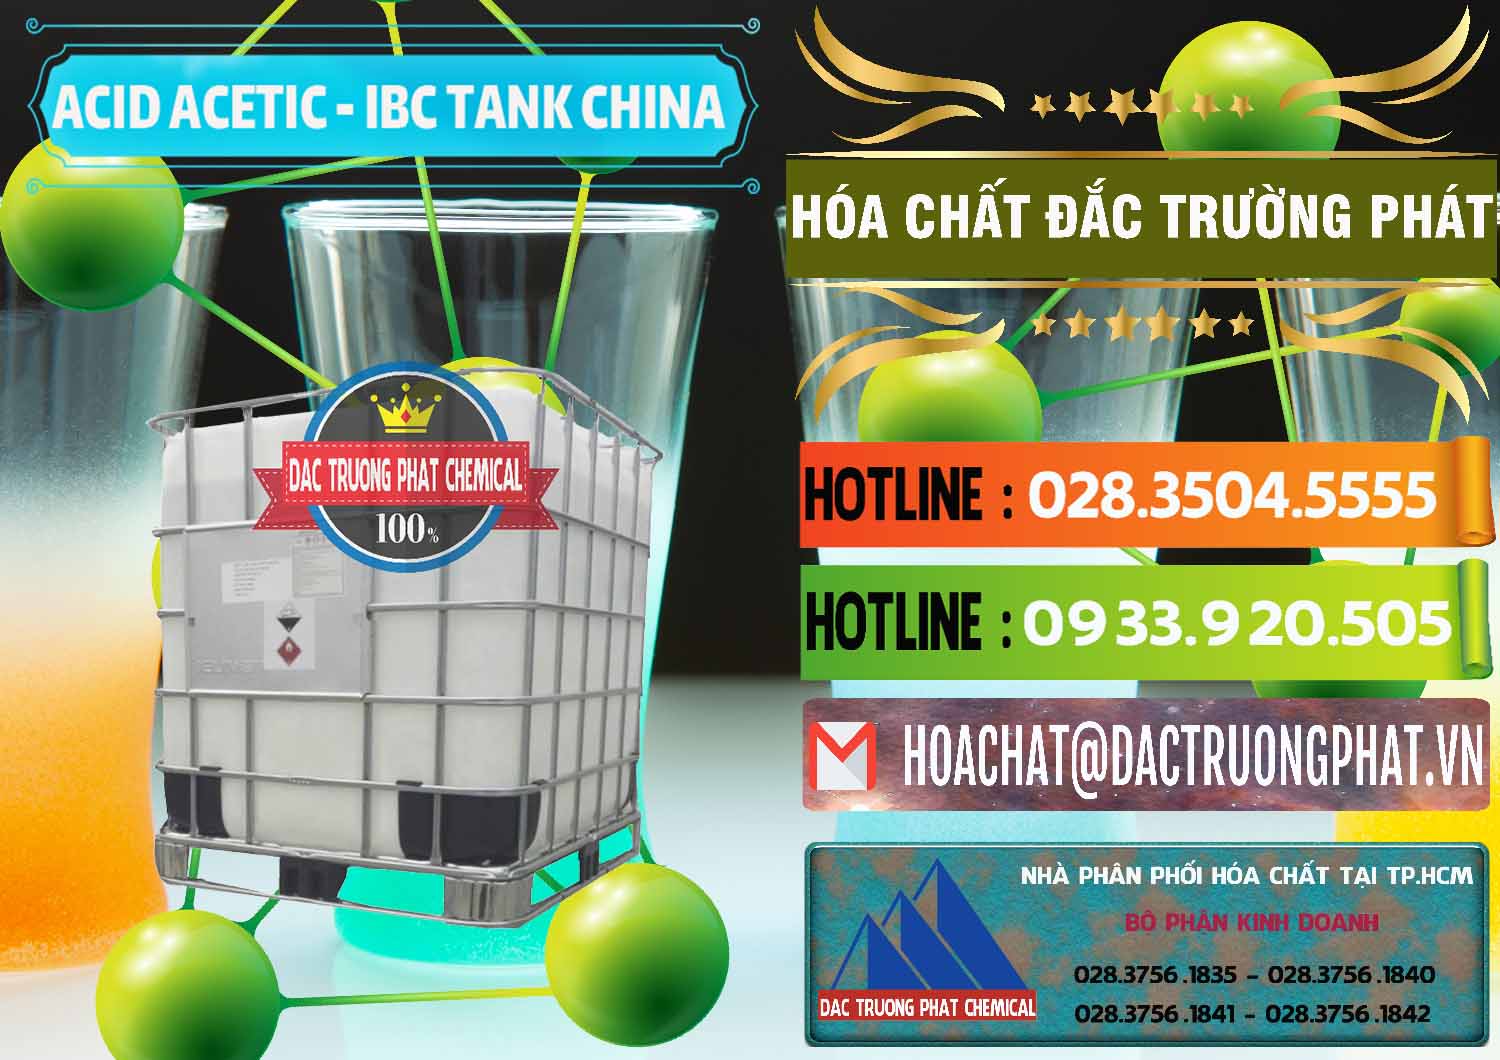 Cty bán và cung cấp Acetic Acid – Axit Acetic Tank Bồn IBC Trung Quốc China - 0443 - Nhà cung ứng _ phân phối hóa chất tại TP.HCM - cungcaphoachat.com.vn